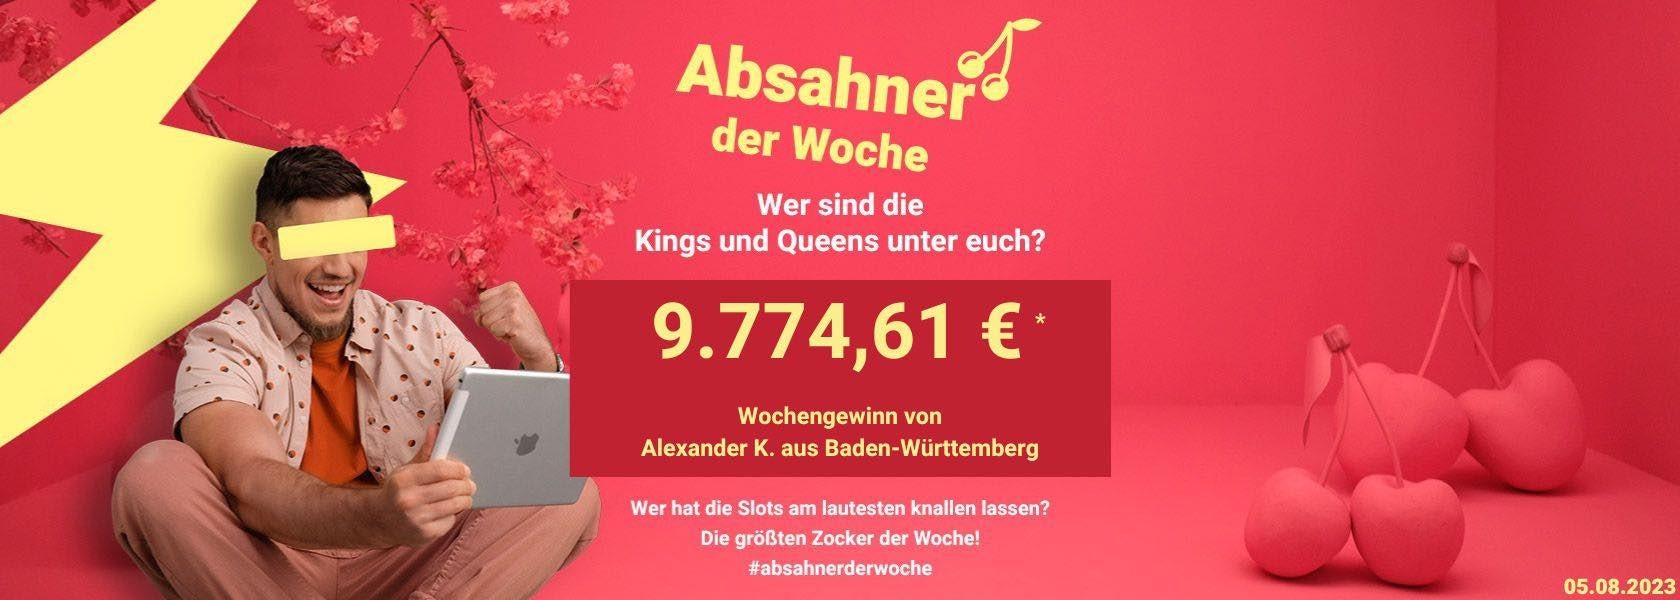 absahner-der-woche-05082023-bingbong